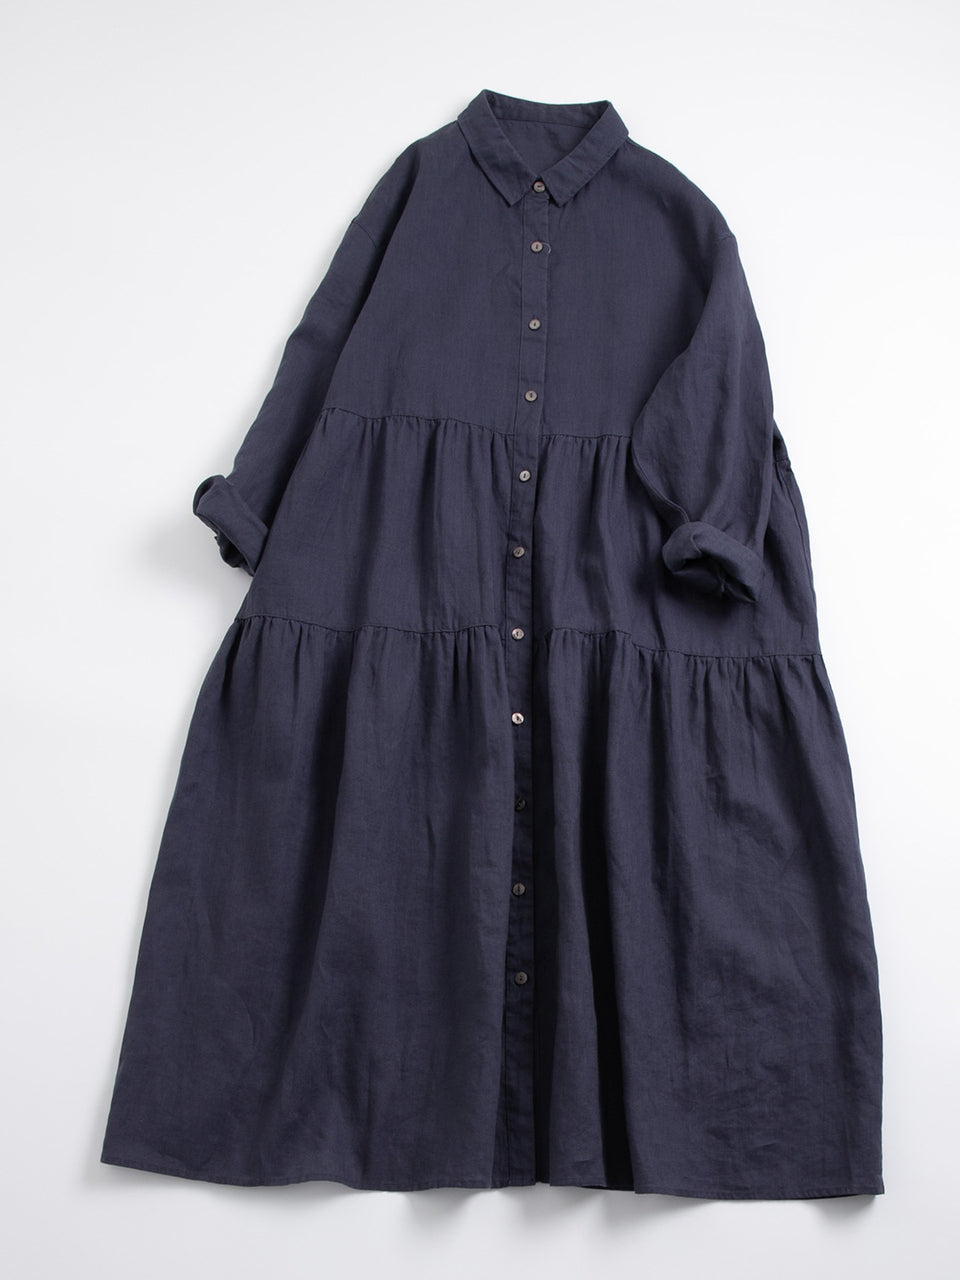 Mori pure linen long-sleeved high-waist dress